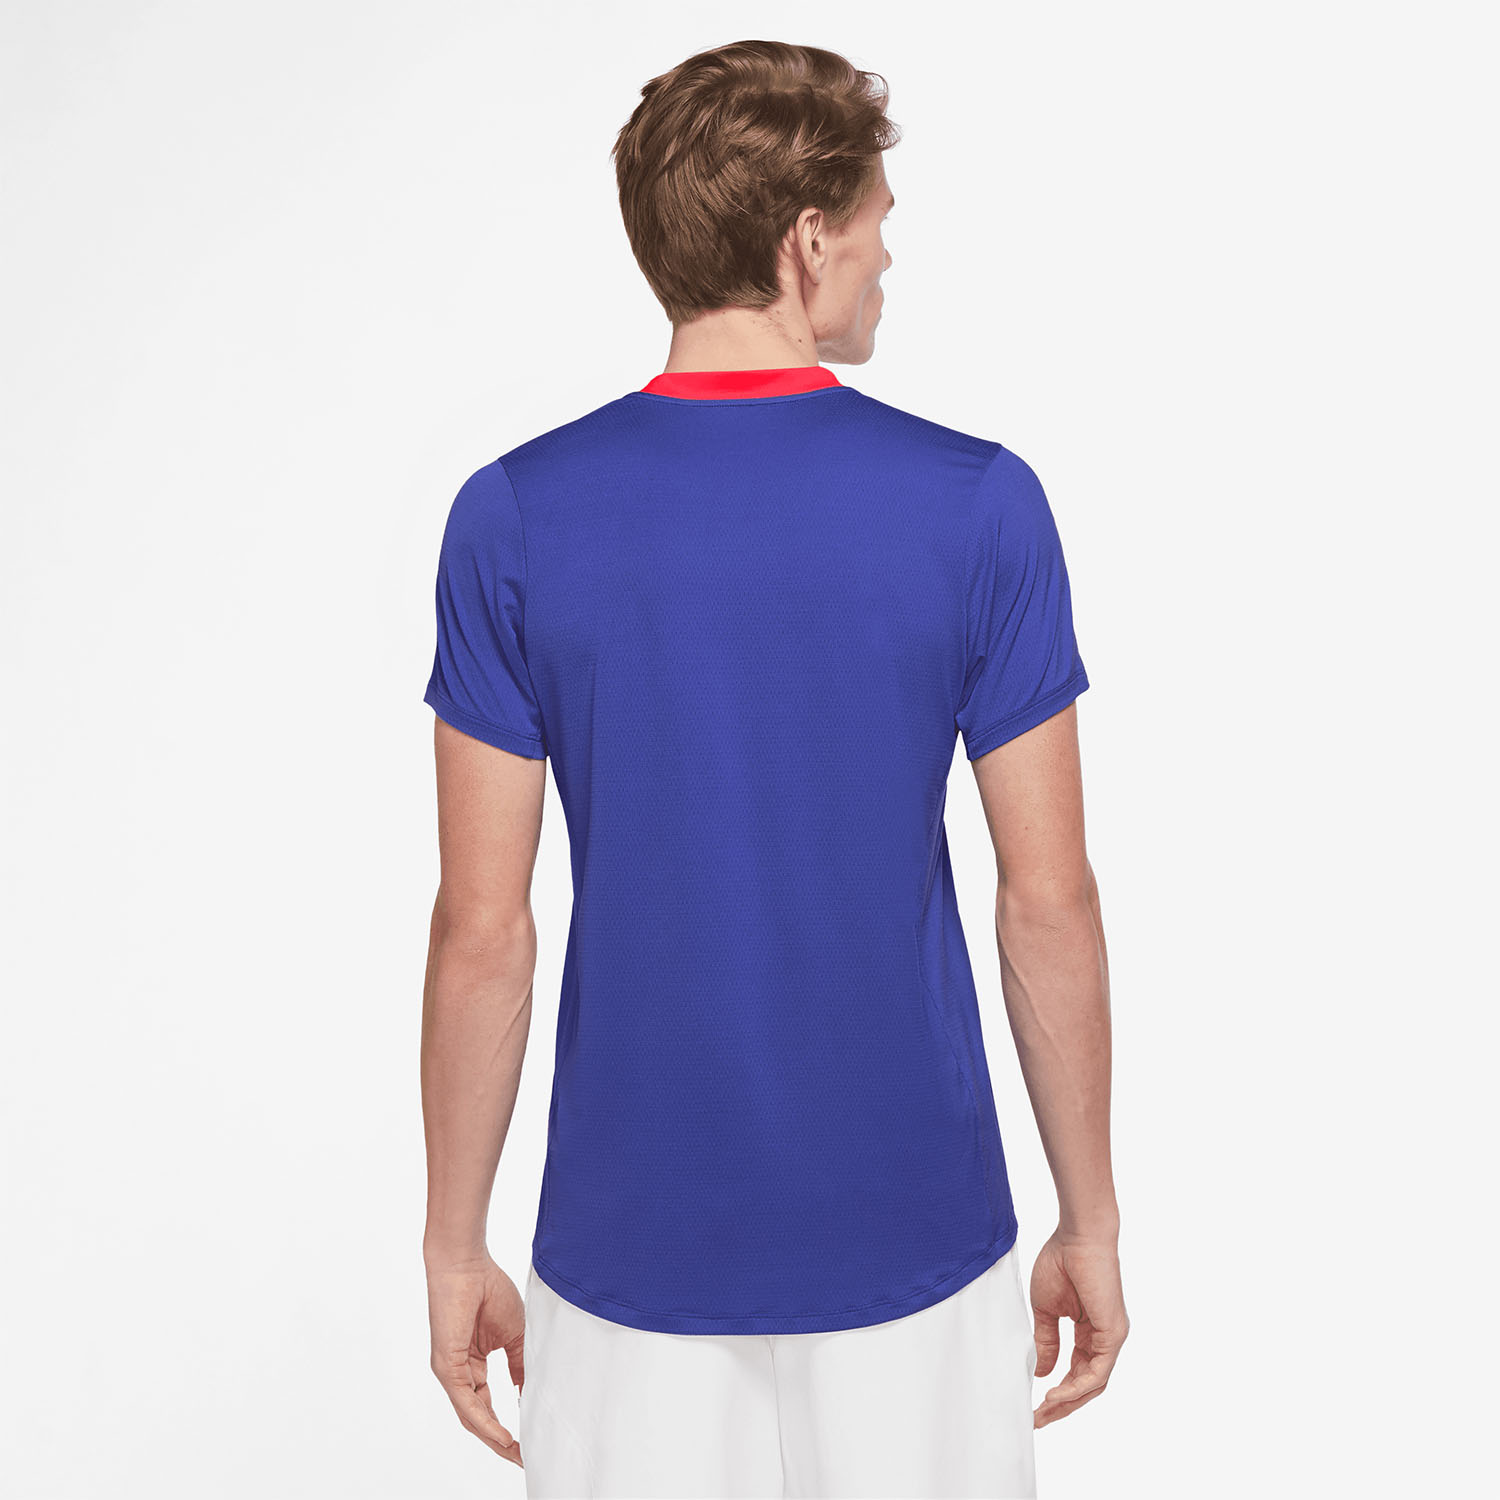 Nike Dri-FIT Advantage Men's Tennis T-Shirt Lapis/Bright Crimson